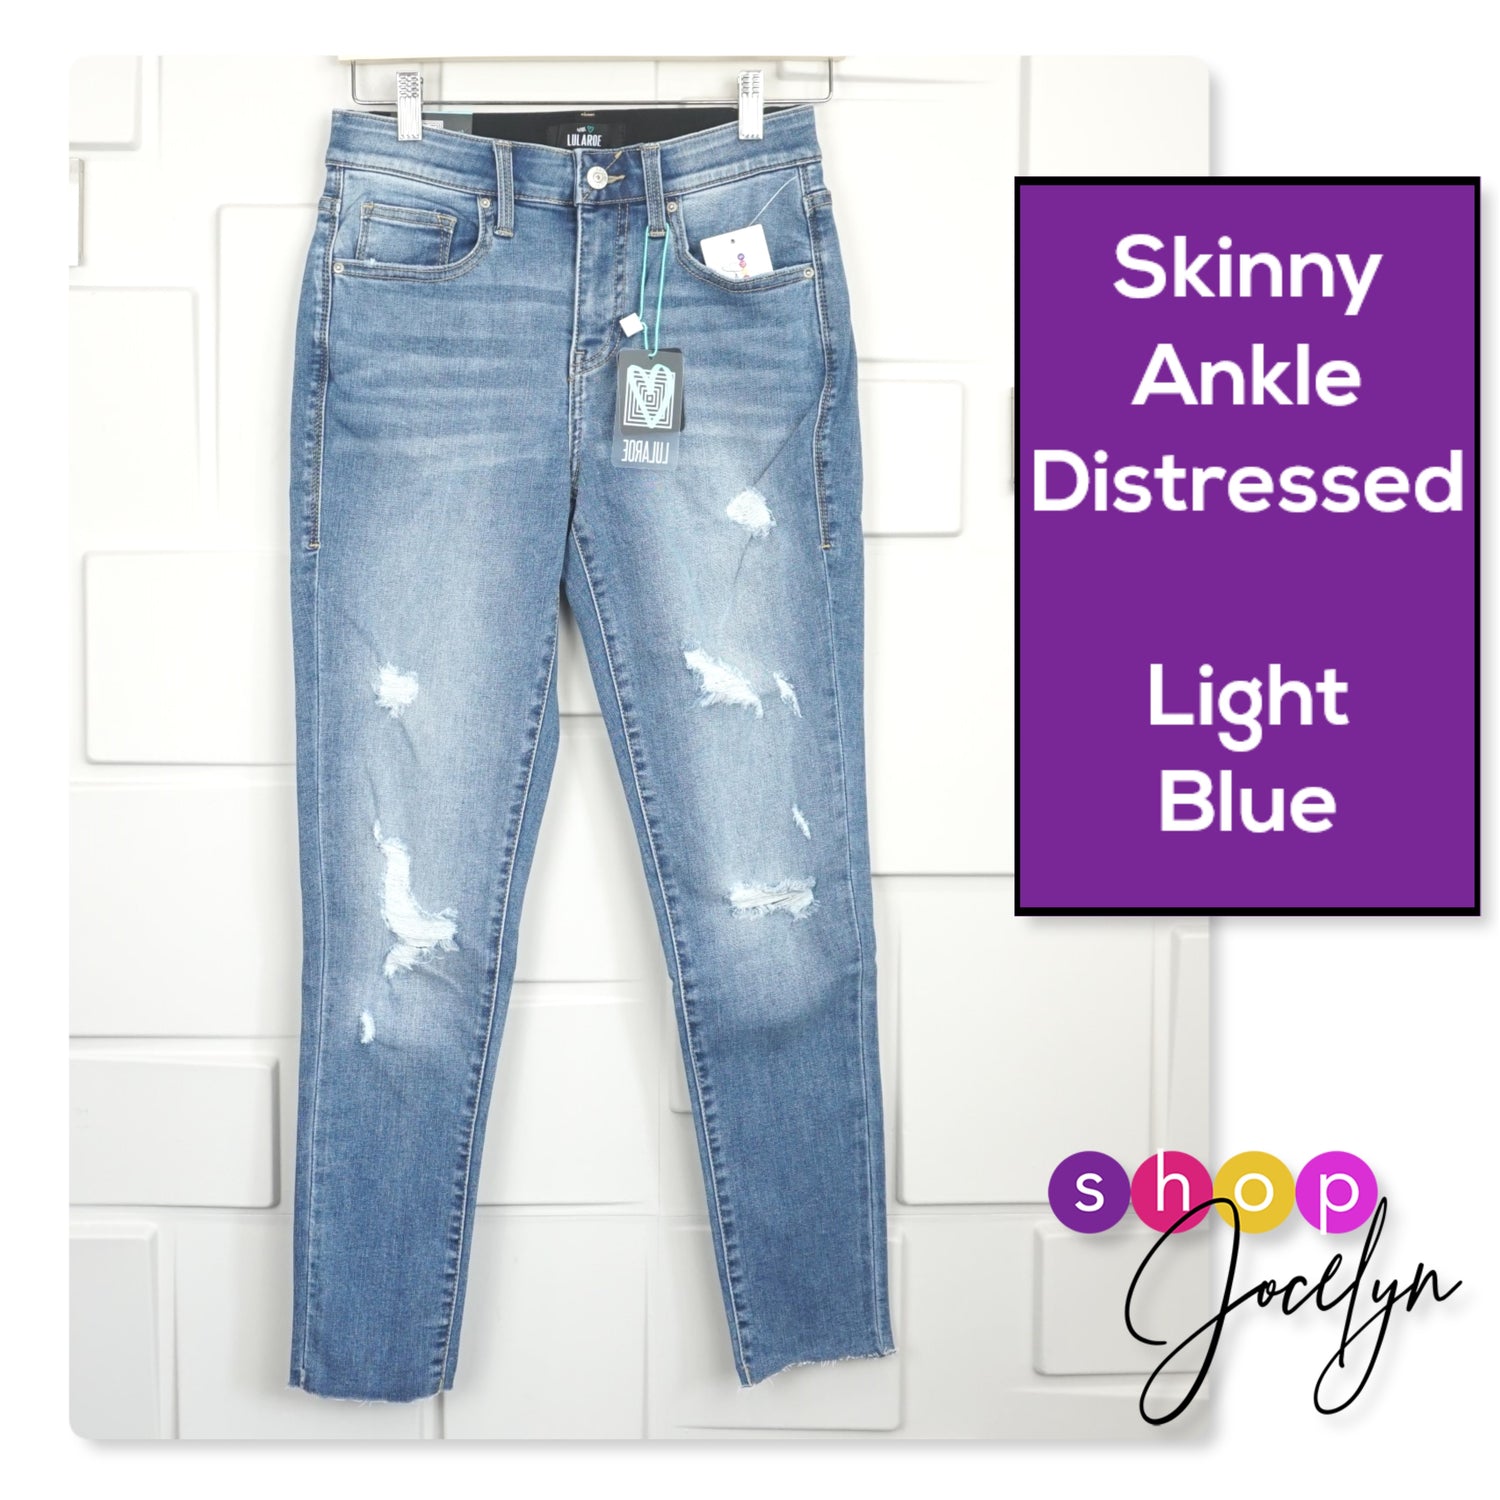 Jax Distressed Denim Skinny Jeans